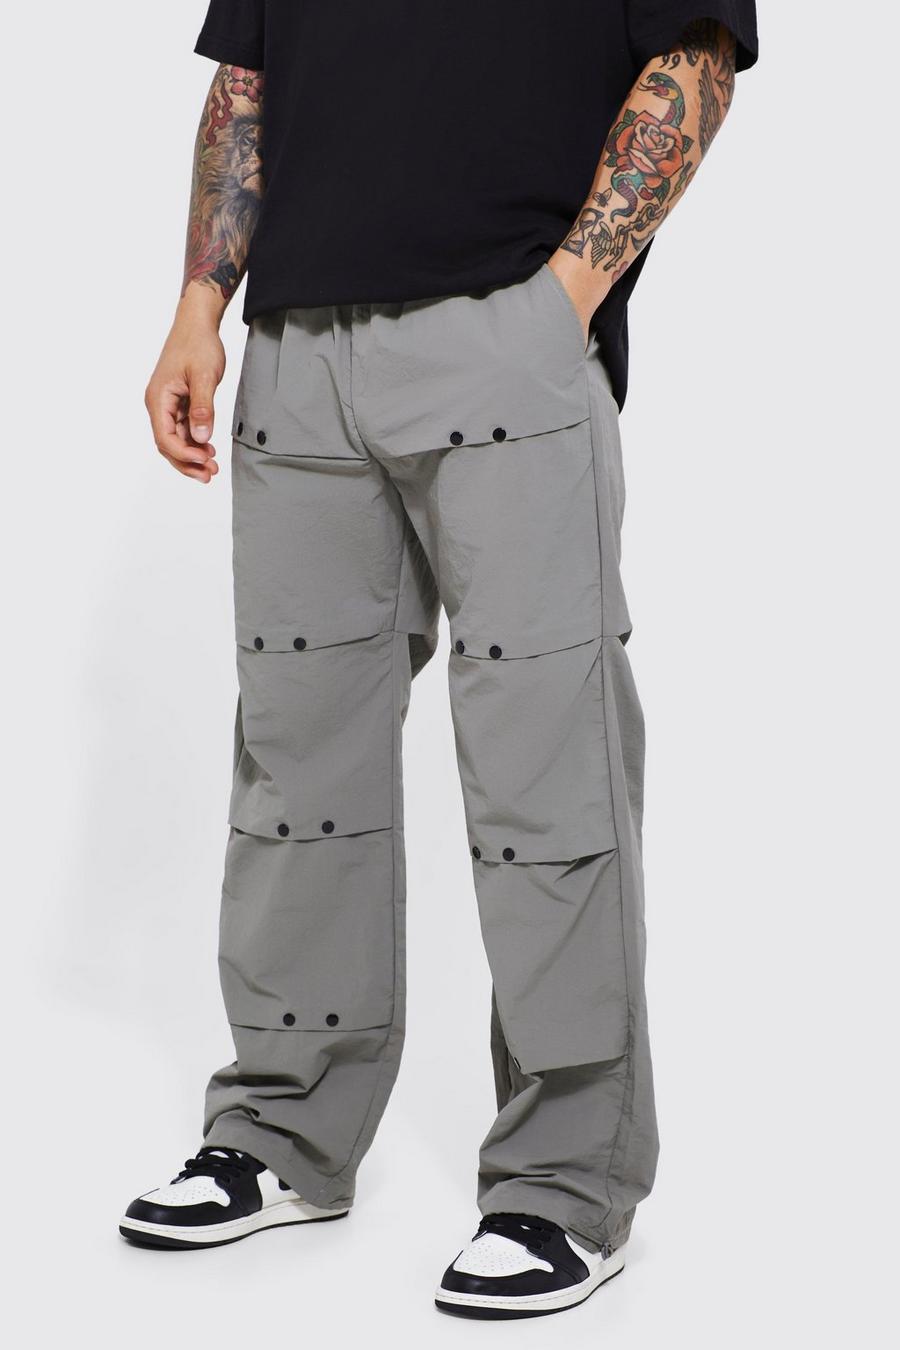 Lockere Hose mit elastischem Bund, Light grey grau